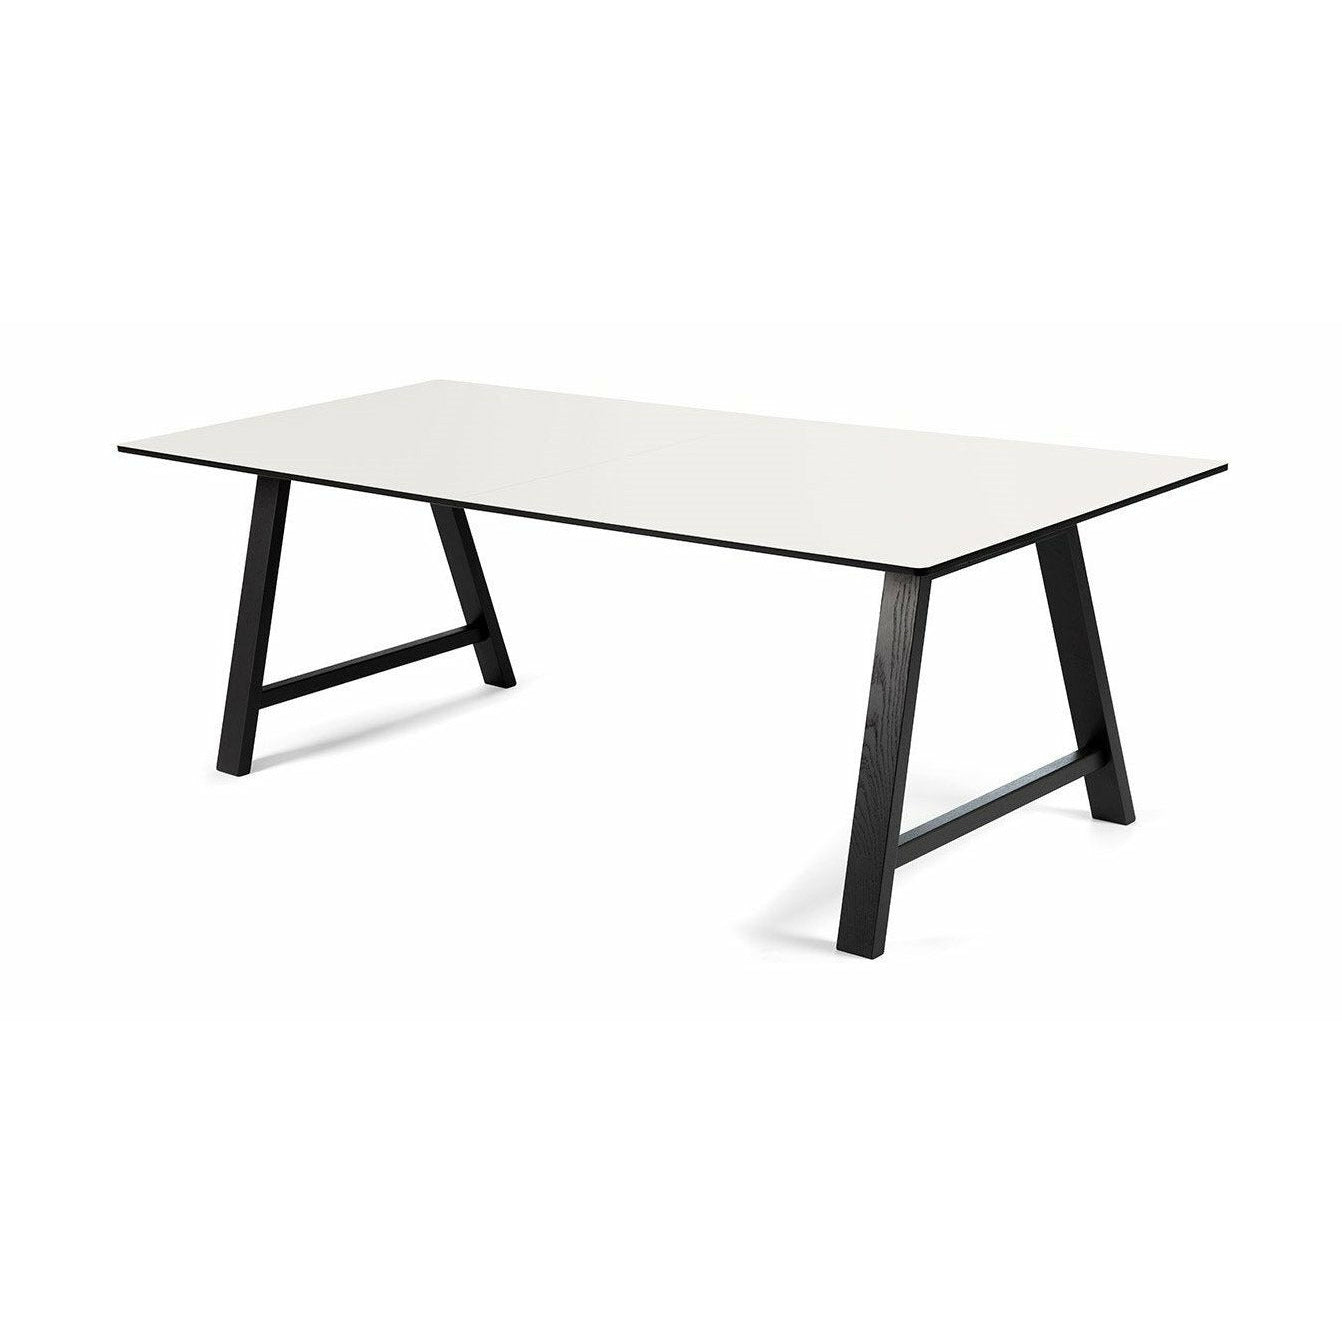 Andersen Furniture T1 udtræksbord, hvid laminat, sort stel, 220 cm